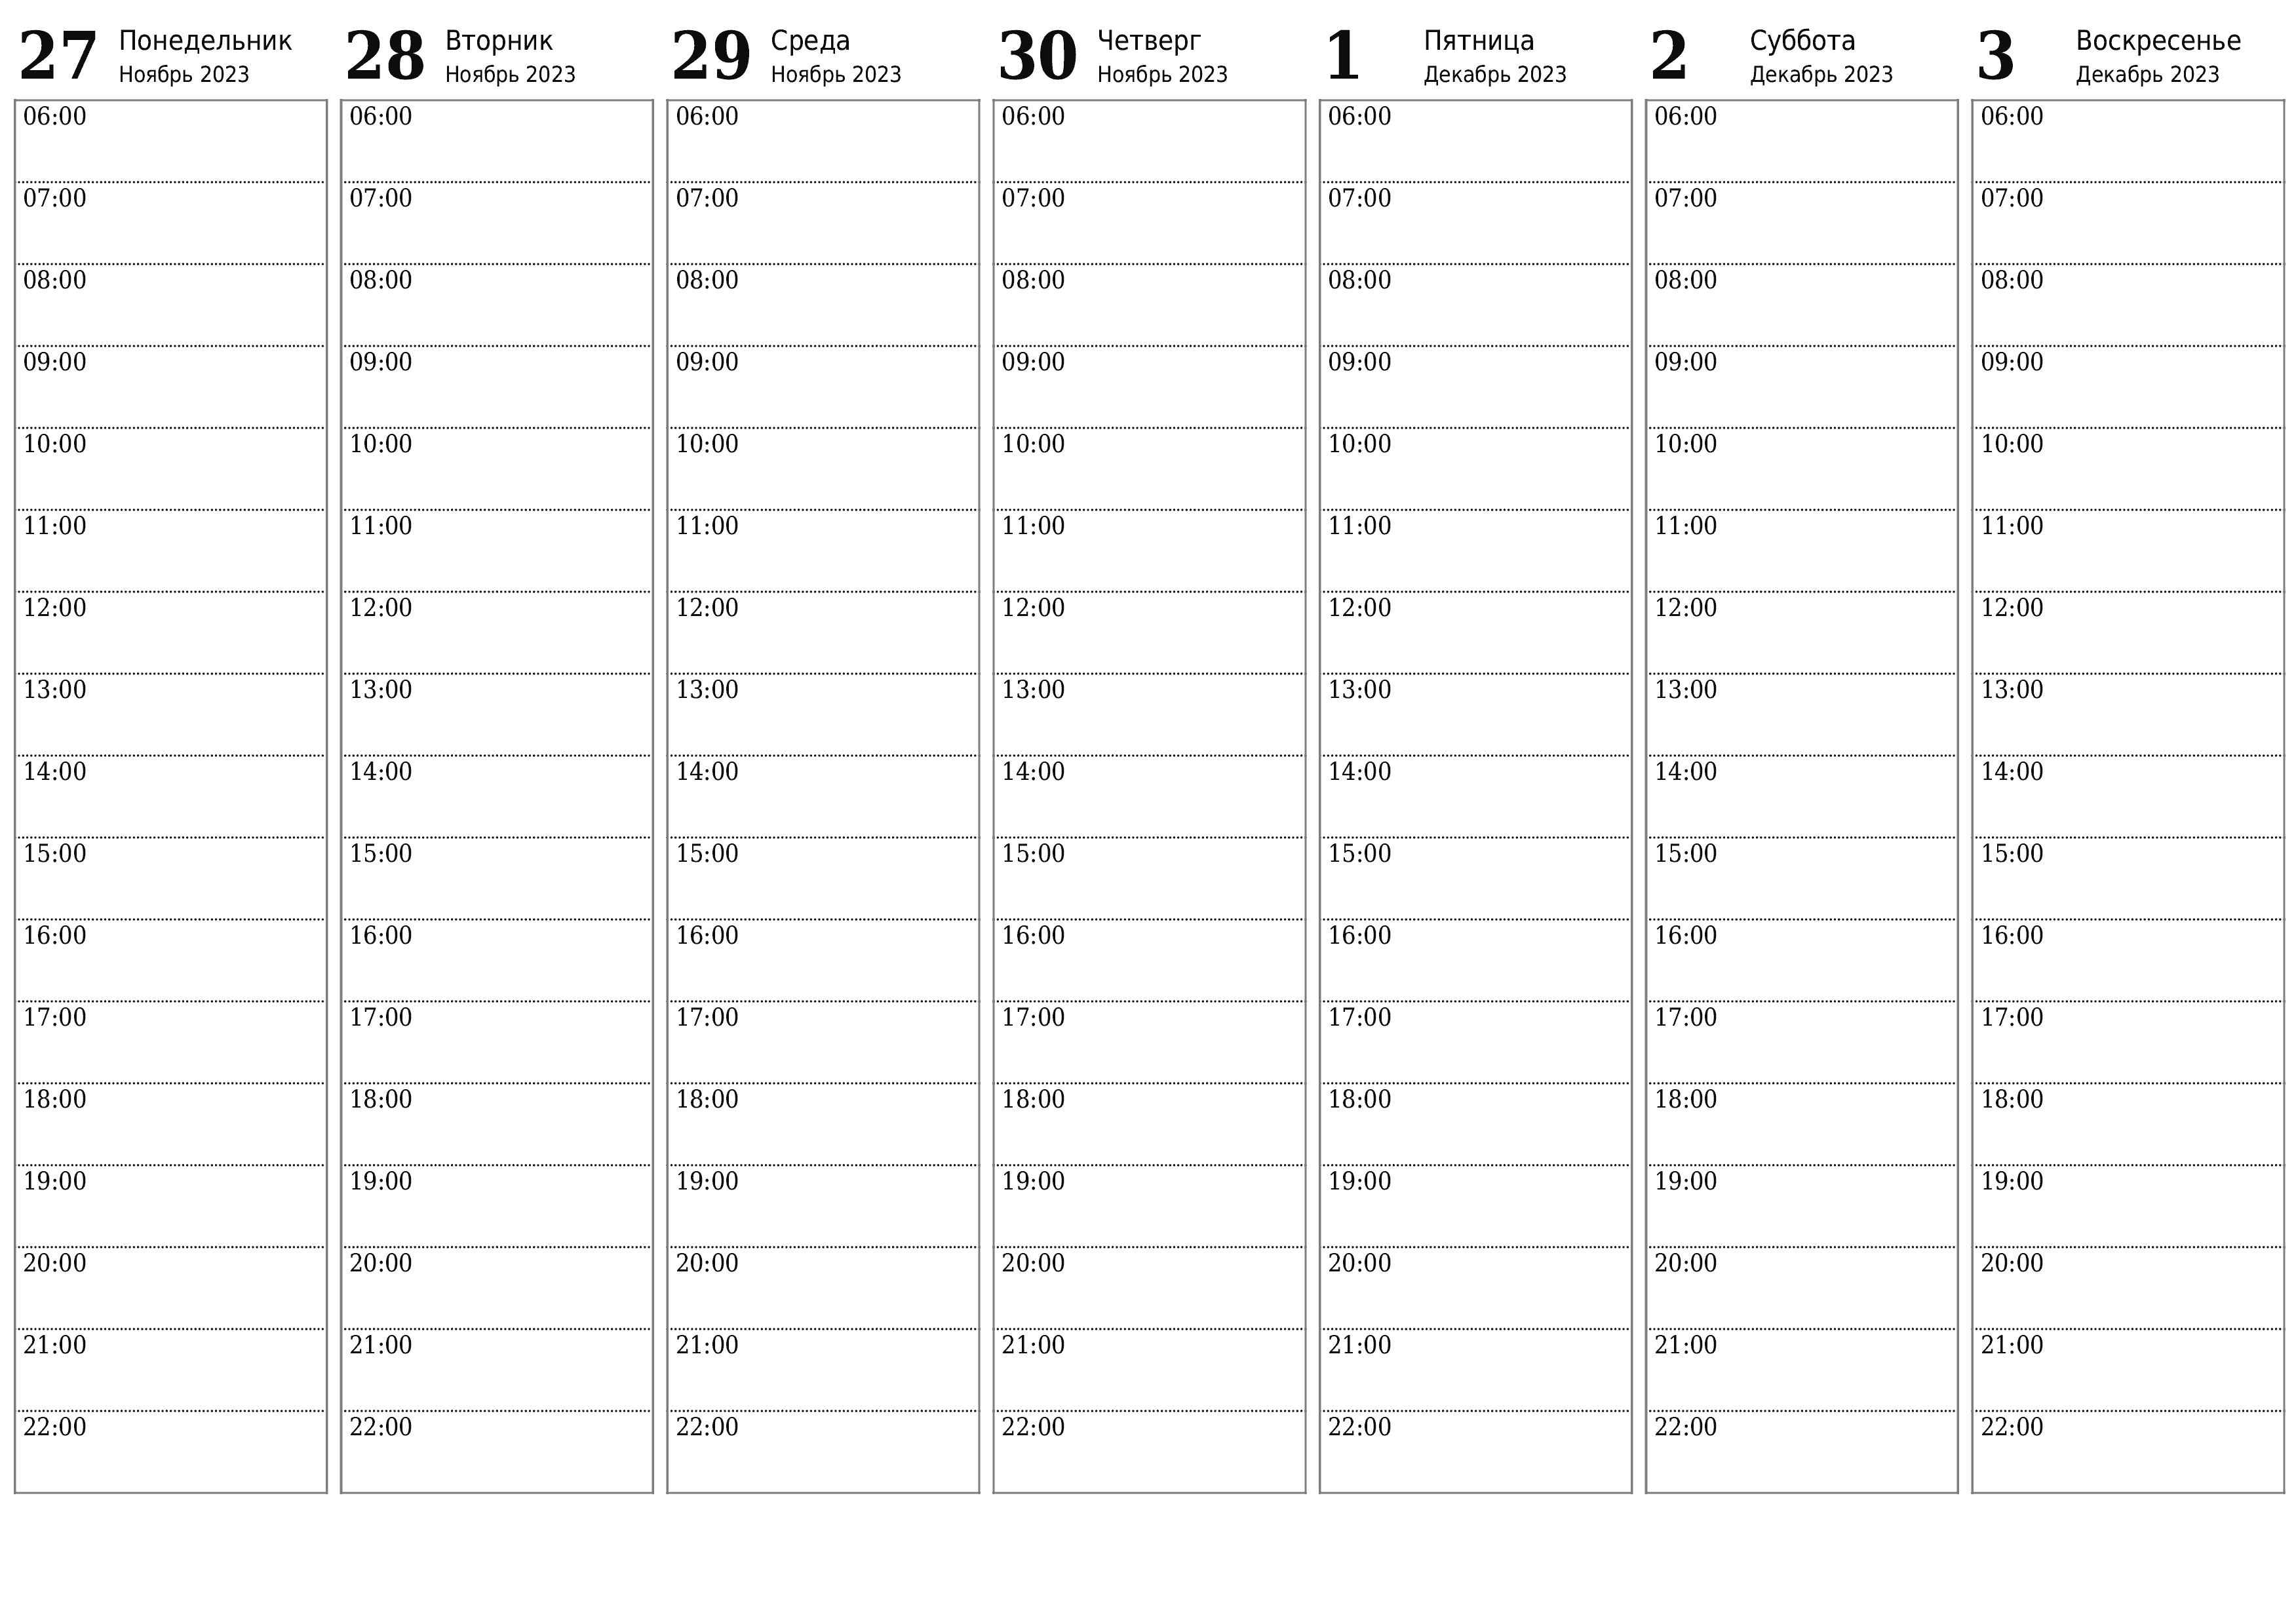 Пустой еженедельный календарь-планер на недели Декабрь 2023